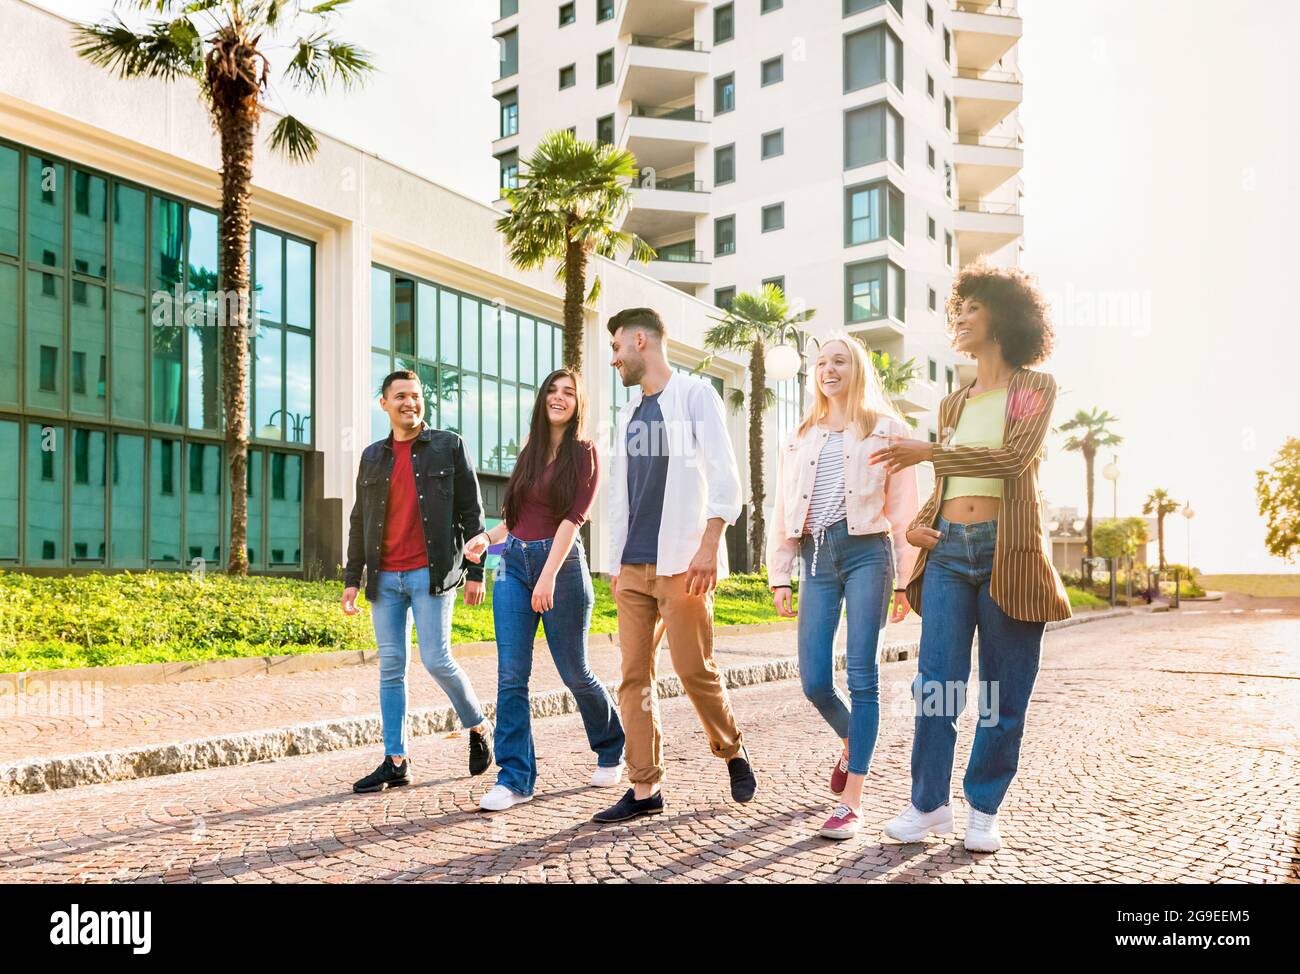 Gruppo multiculturale variegato di giovani amici che camminano in fila lungo una strada urbana chiacchierando e ridendo retroilluminati dal sole in una vista ad angolo basso Foto Stock